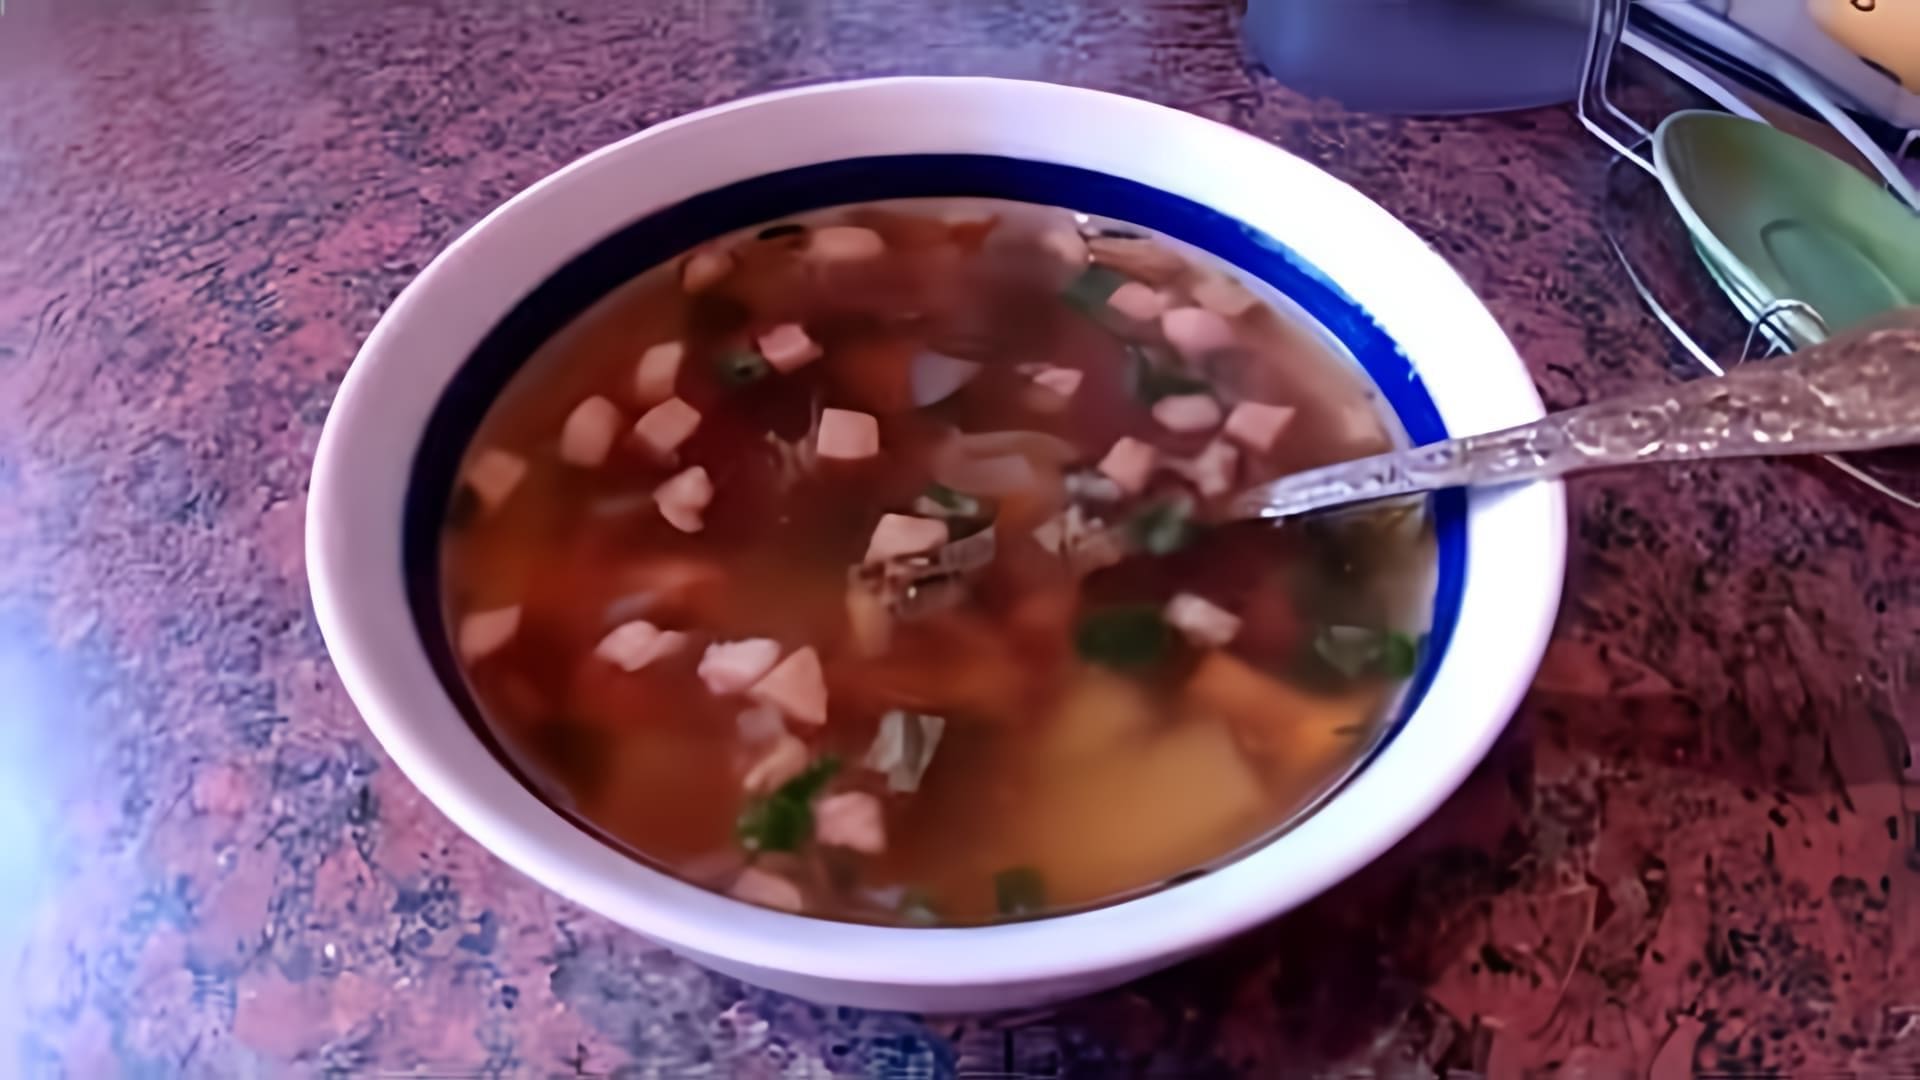 В этом видео демонстрируется процесс приготовления грибного супа из лисичек